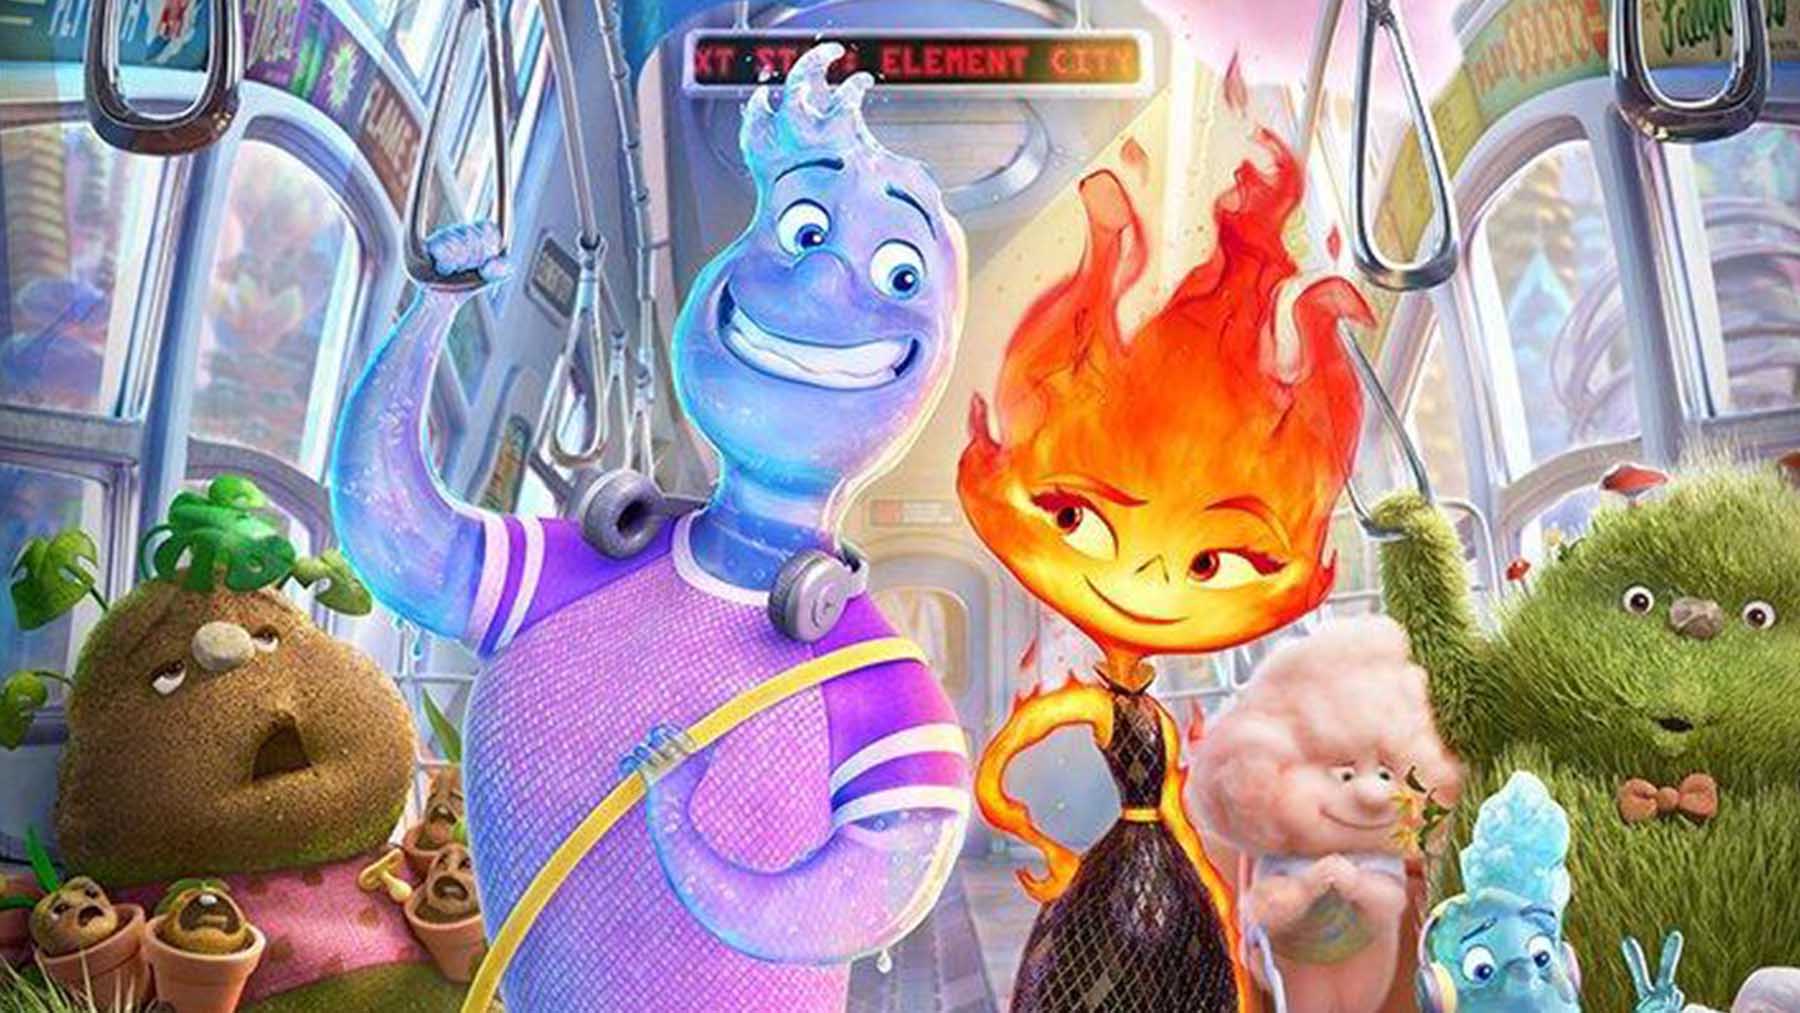 Películas geniales de Pixar para ver después de ‘Elemental’